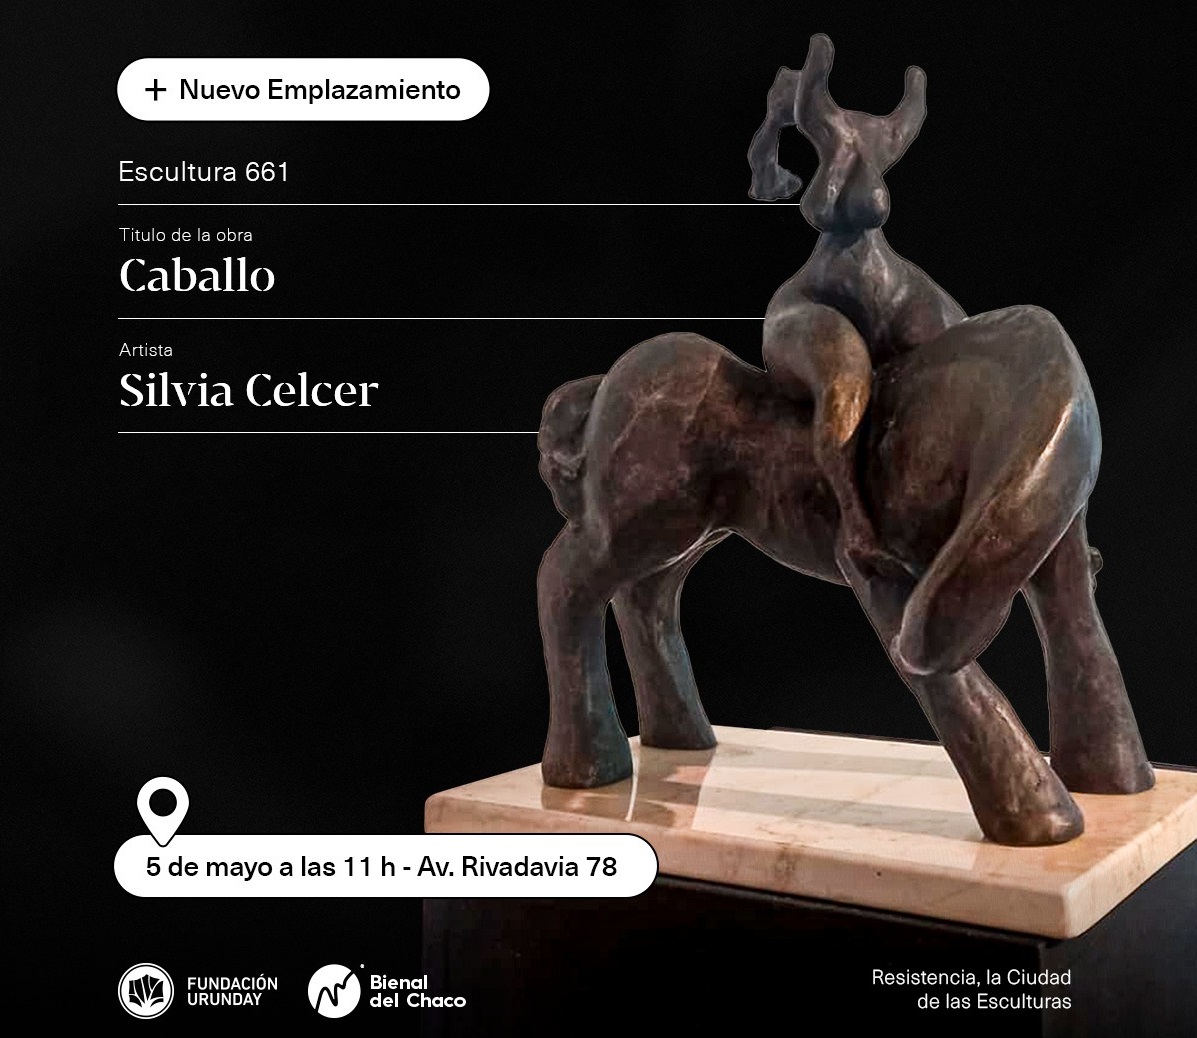 Caballo, la nueva escultura emplazada en la Ciudad de Resistencia